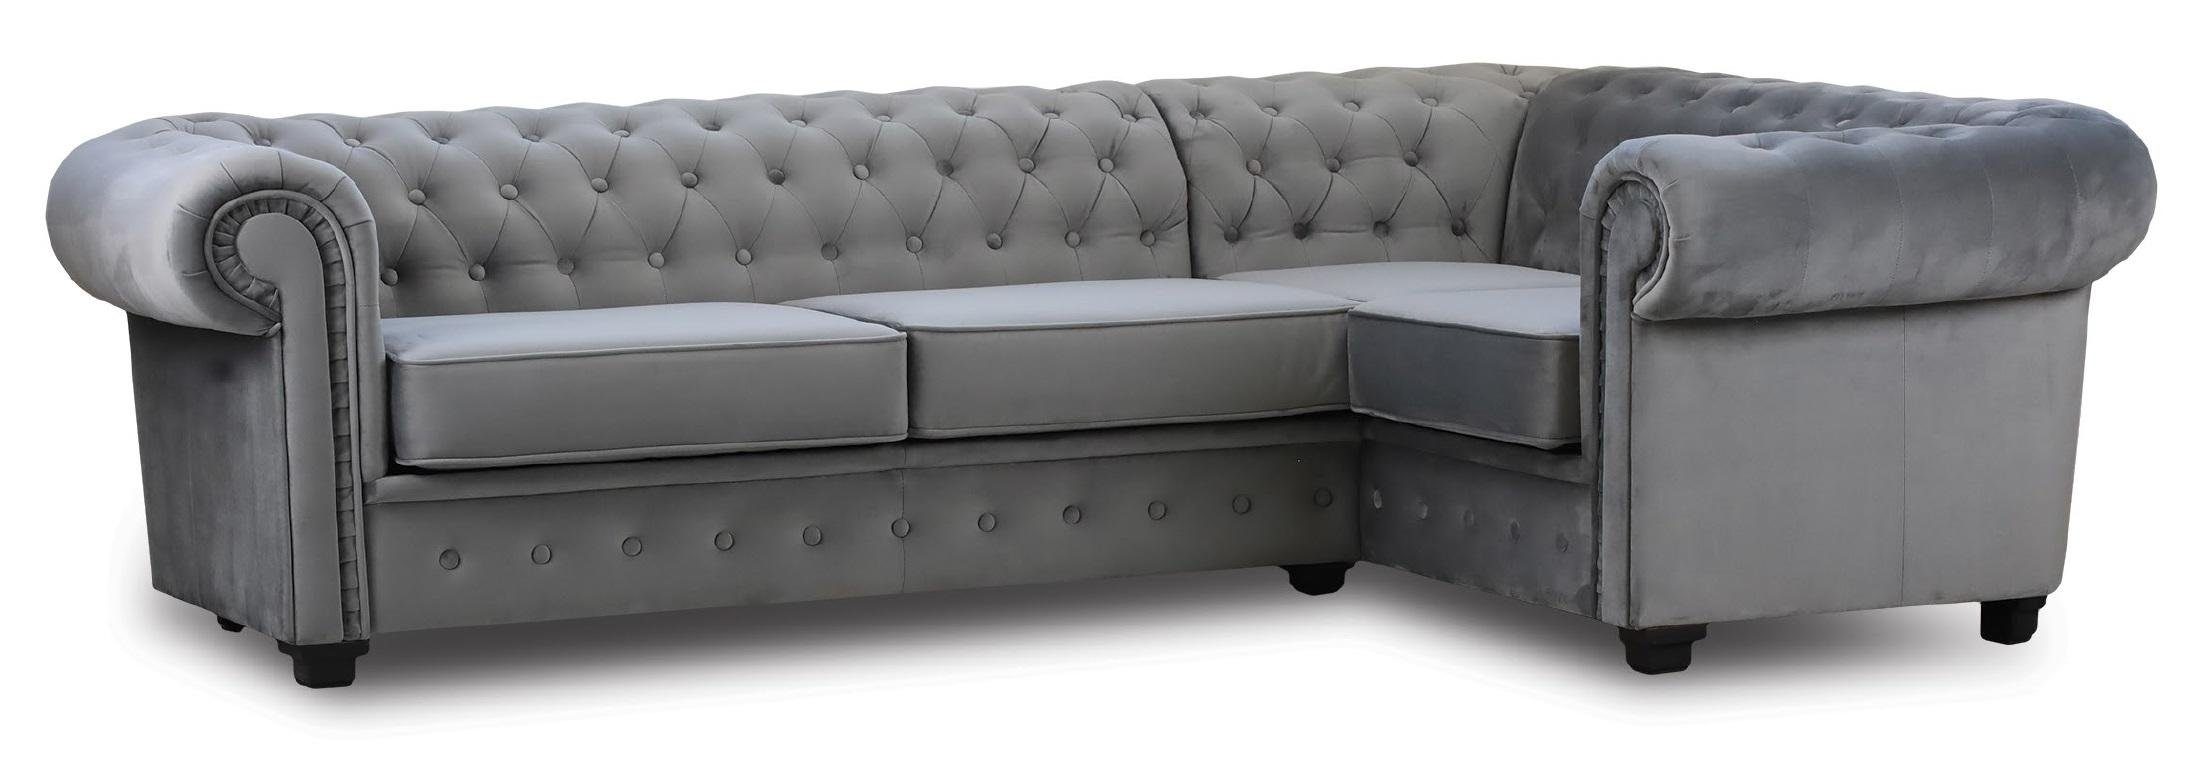 JVmoebel Ecksofa, Ecksofa Couch Polster Möbel Luxus Stoff Samt Möbel Einrichtung